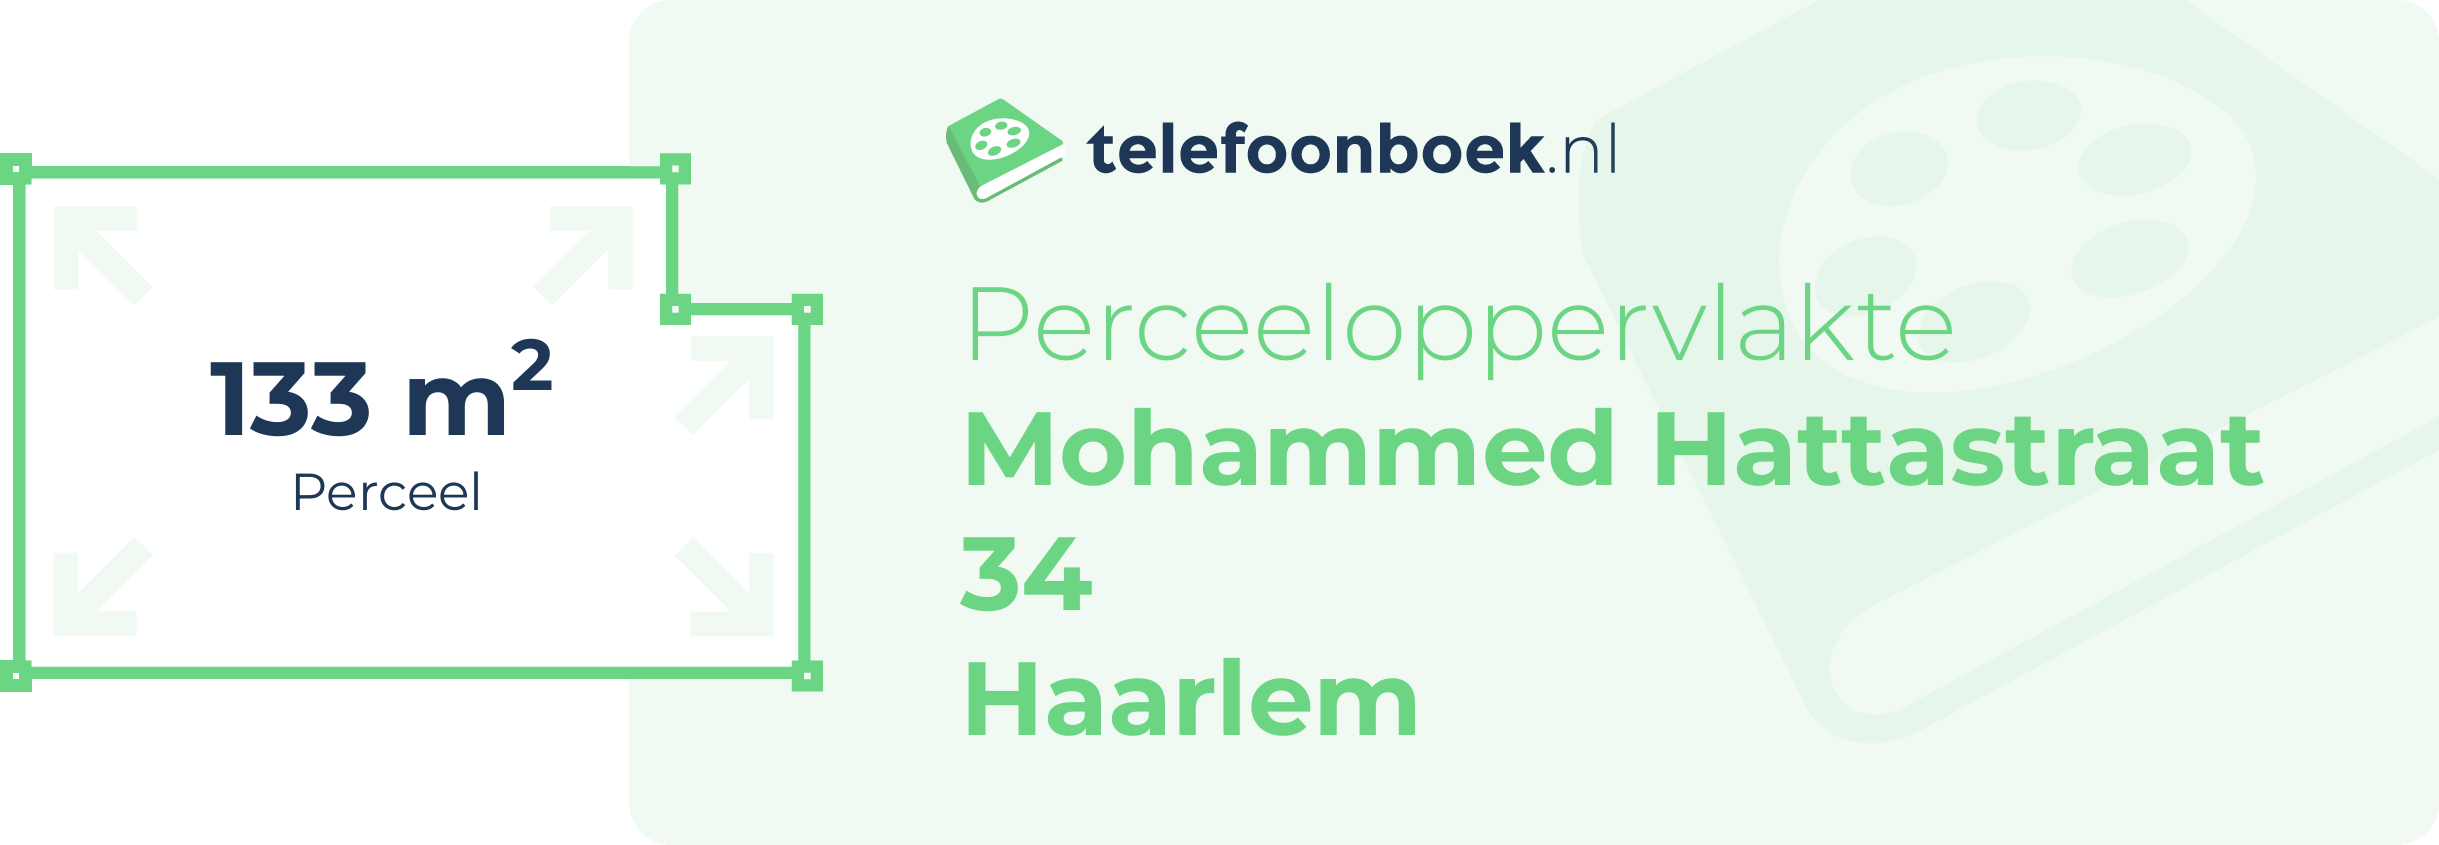 Perceeloppervlakte Mohammed Hattastraat 34 Haarlem